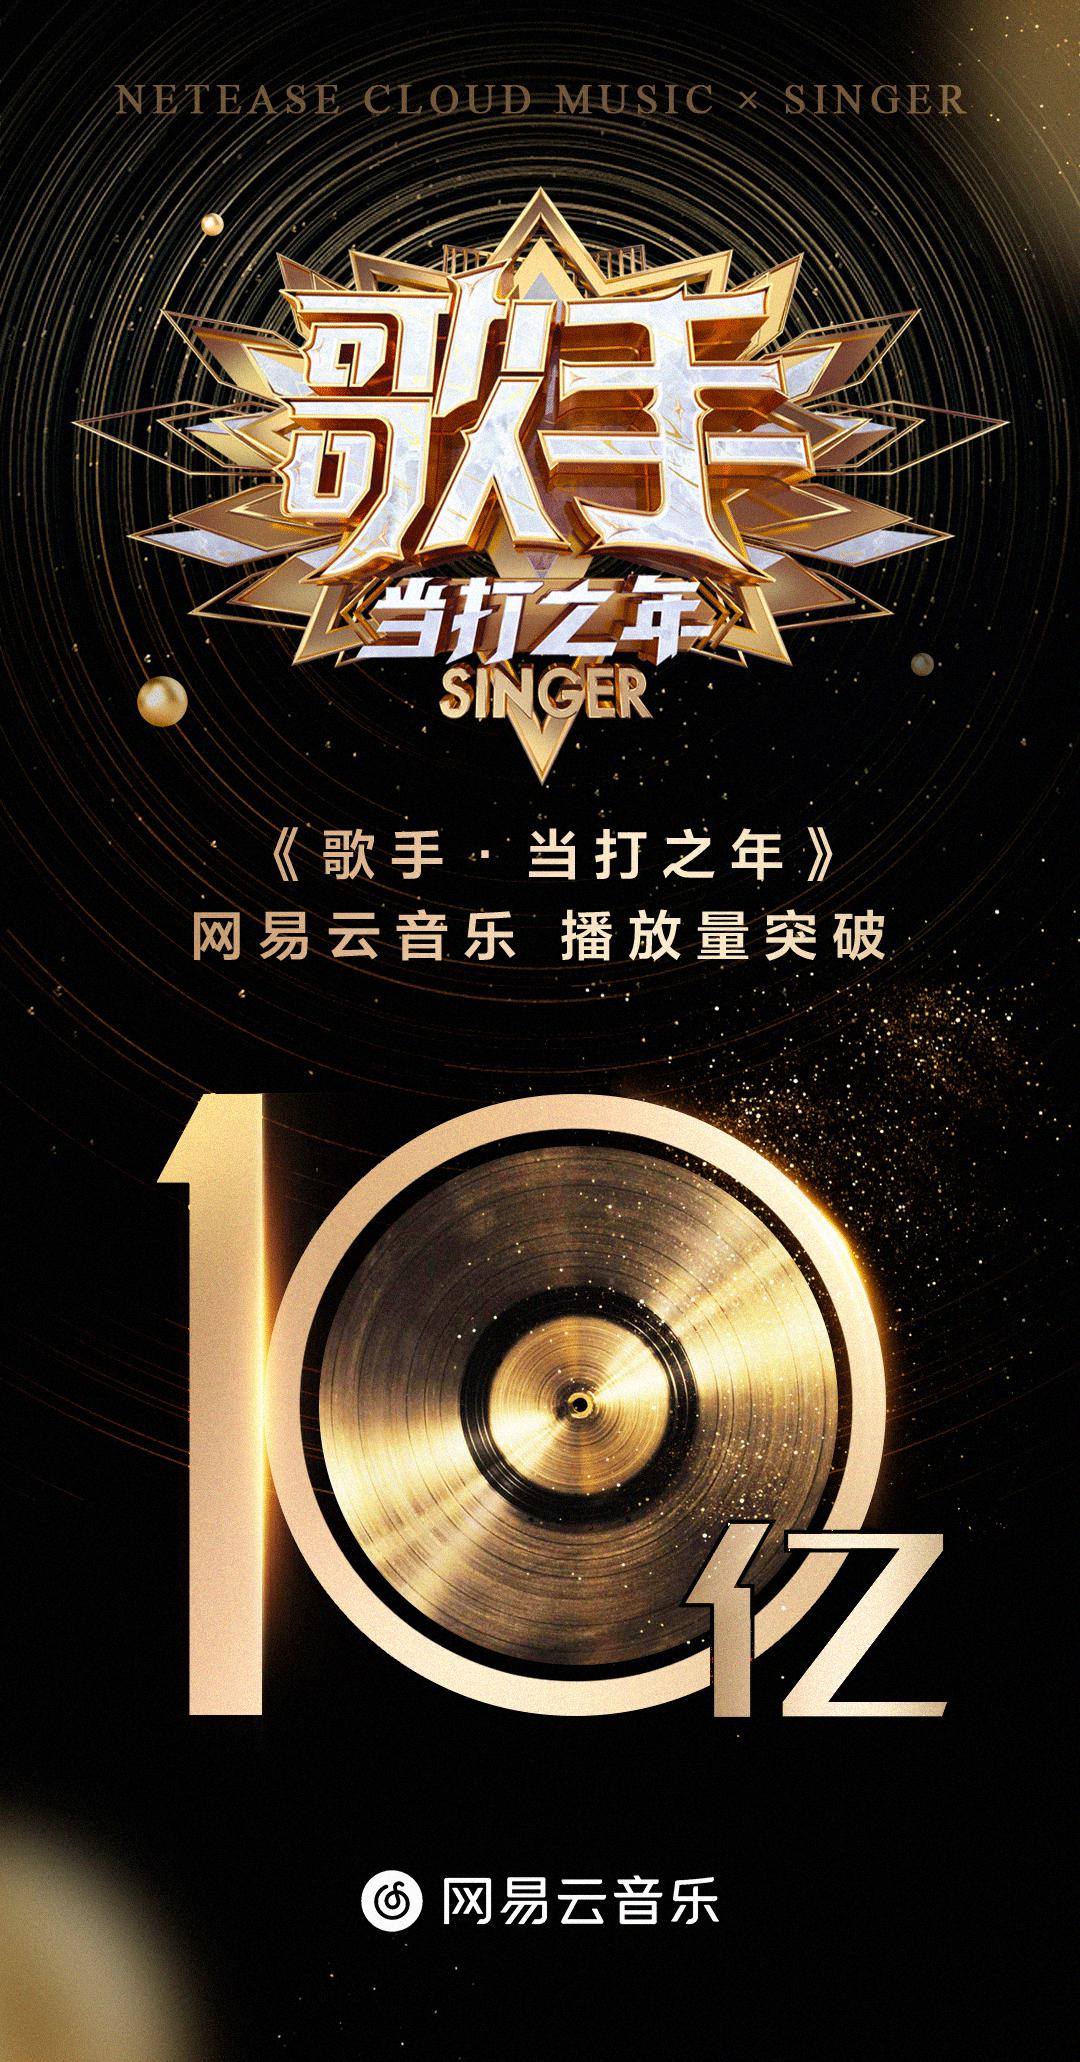 2020年歌曲排行榜_2020新歌热度榜:肖战第一,张艺兴第三,林俊杰三首上榜(2)